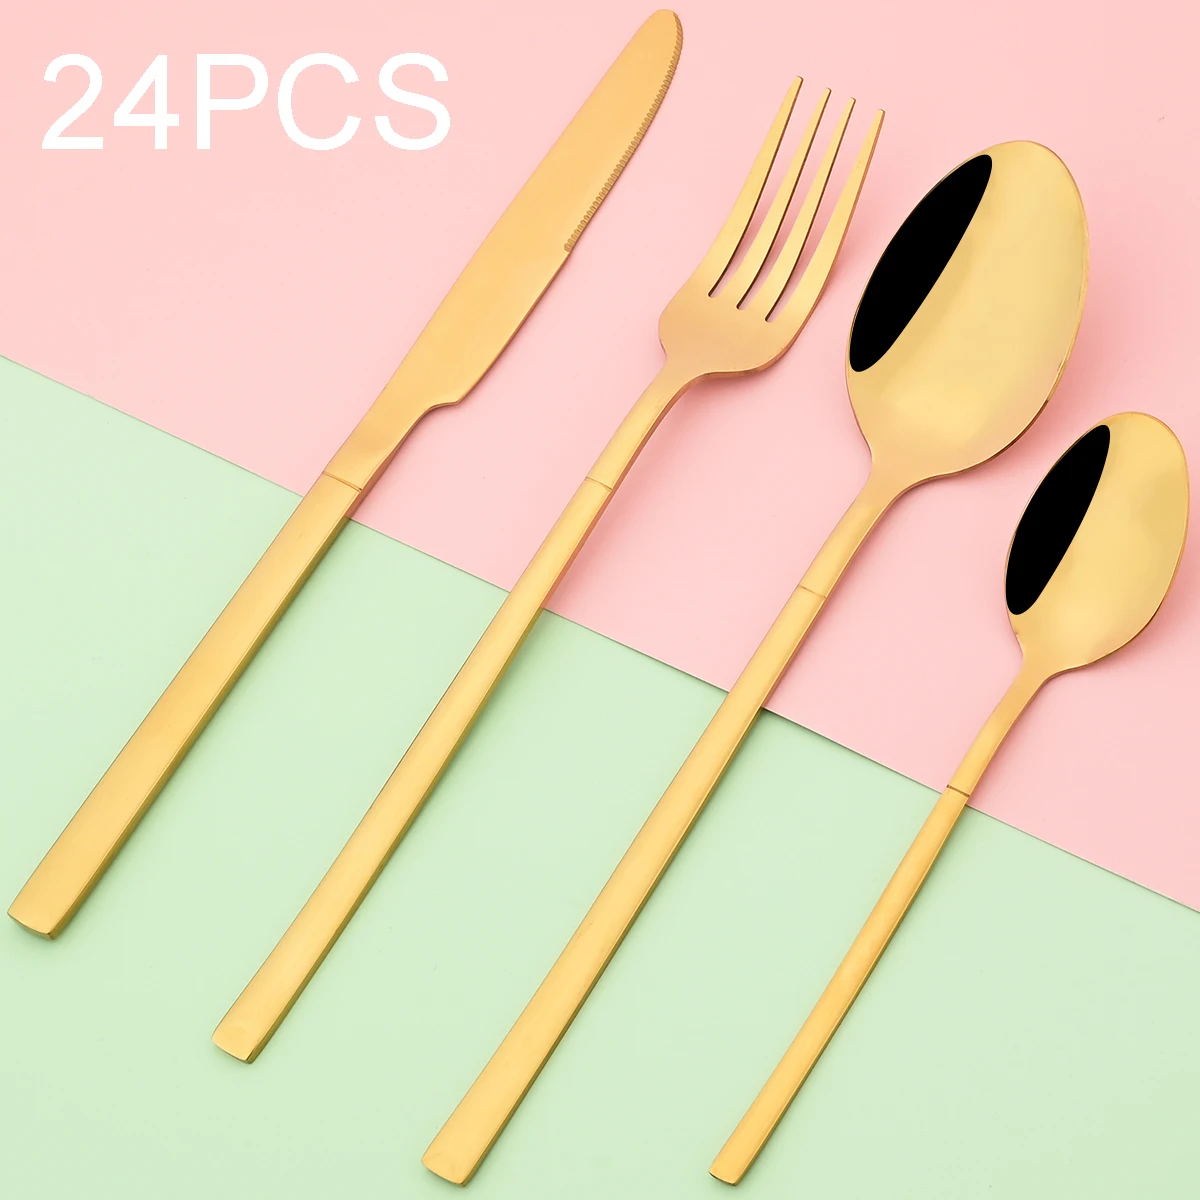 

24Pcs Vintage Gold Dinnerware Set Knife Forks Coffee Spoon Cutlery Set Stainless Steel Flatware Tableware Set Western Silverware